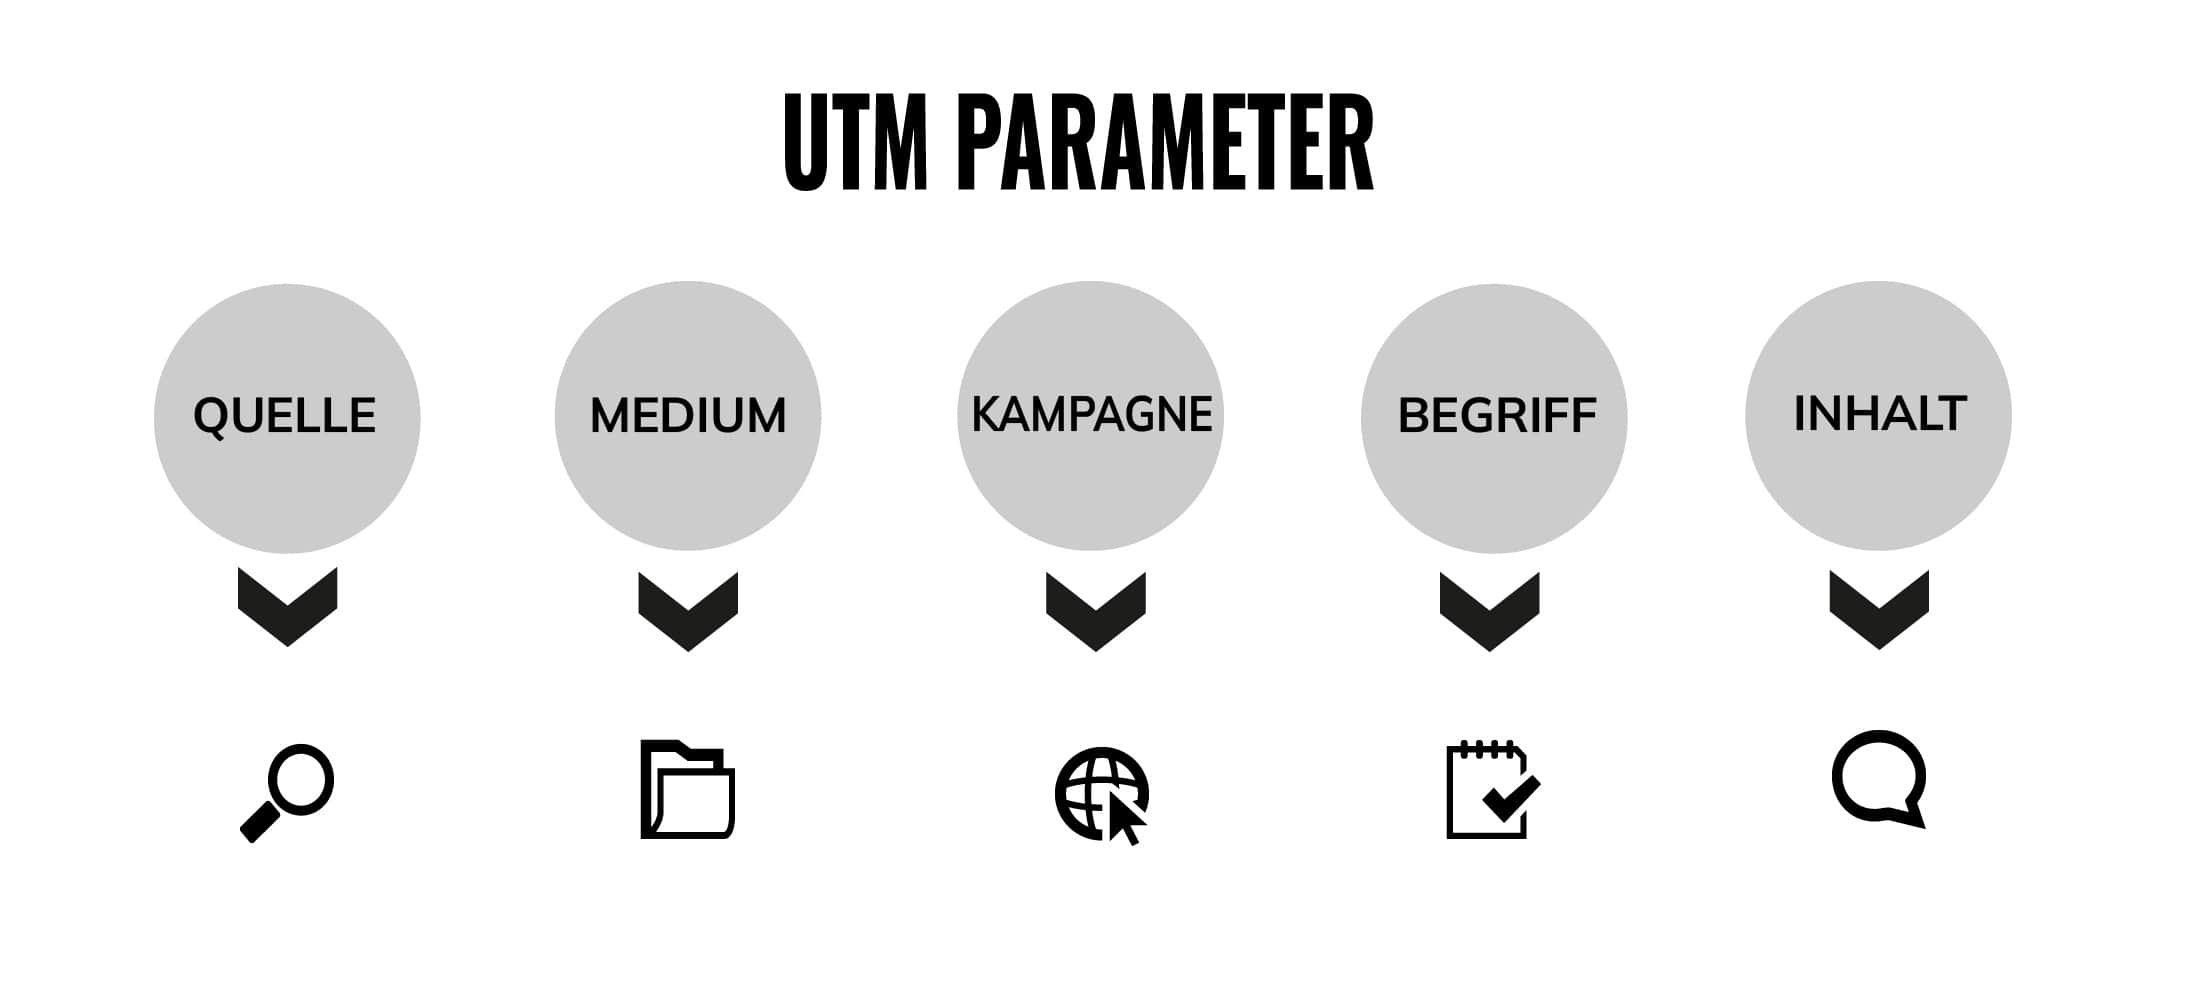 UTM Parameter